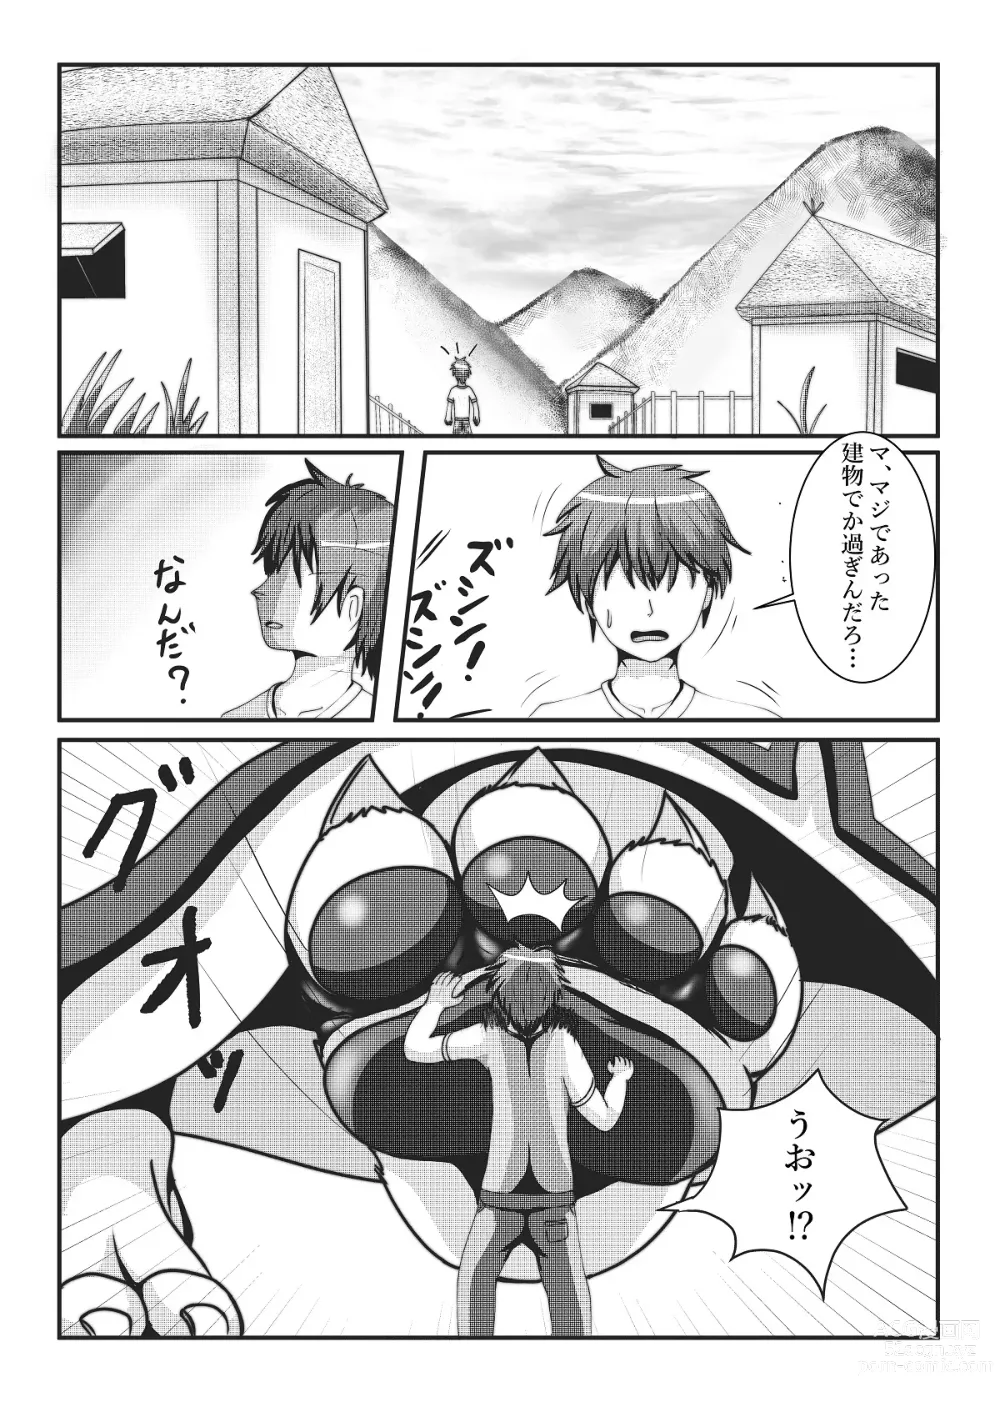 Page 5 of doujinshi Kyoju mura